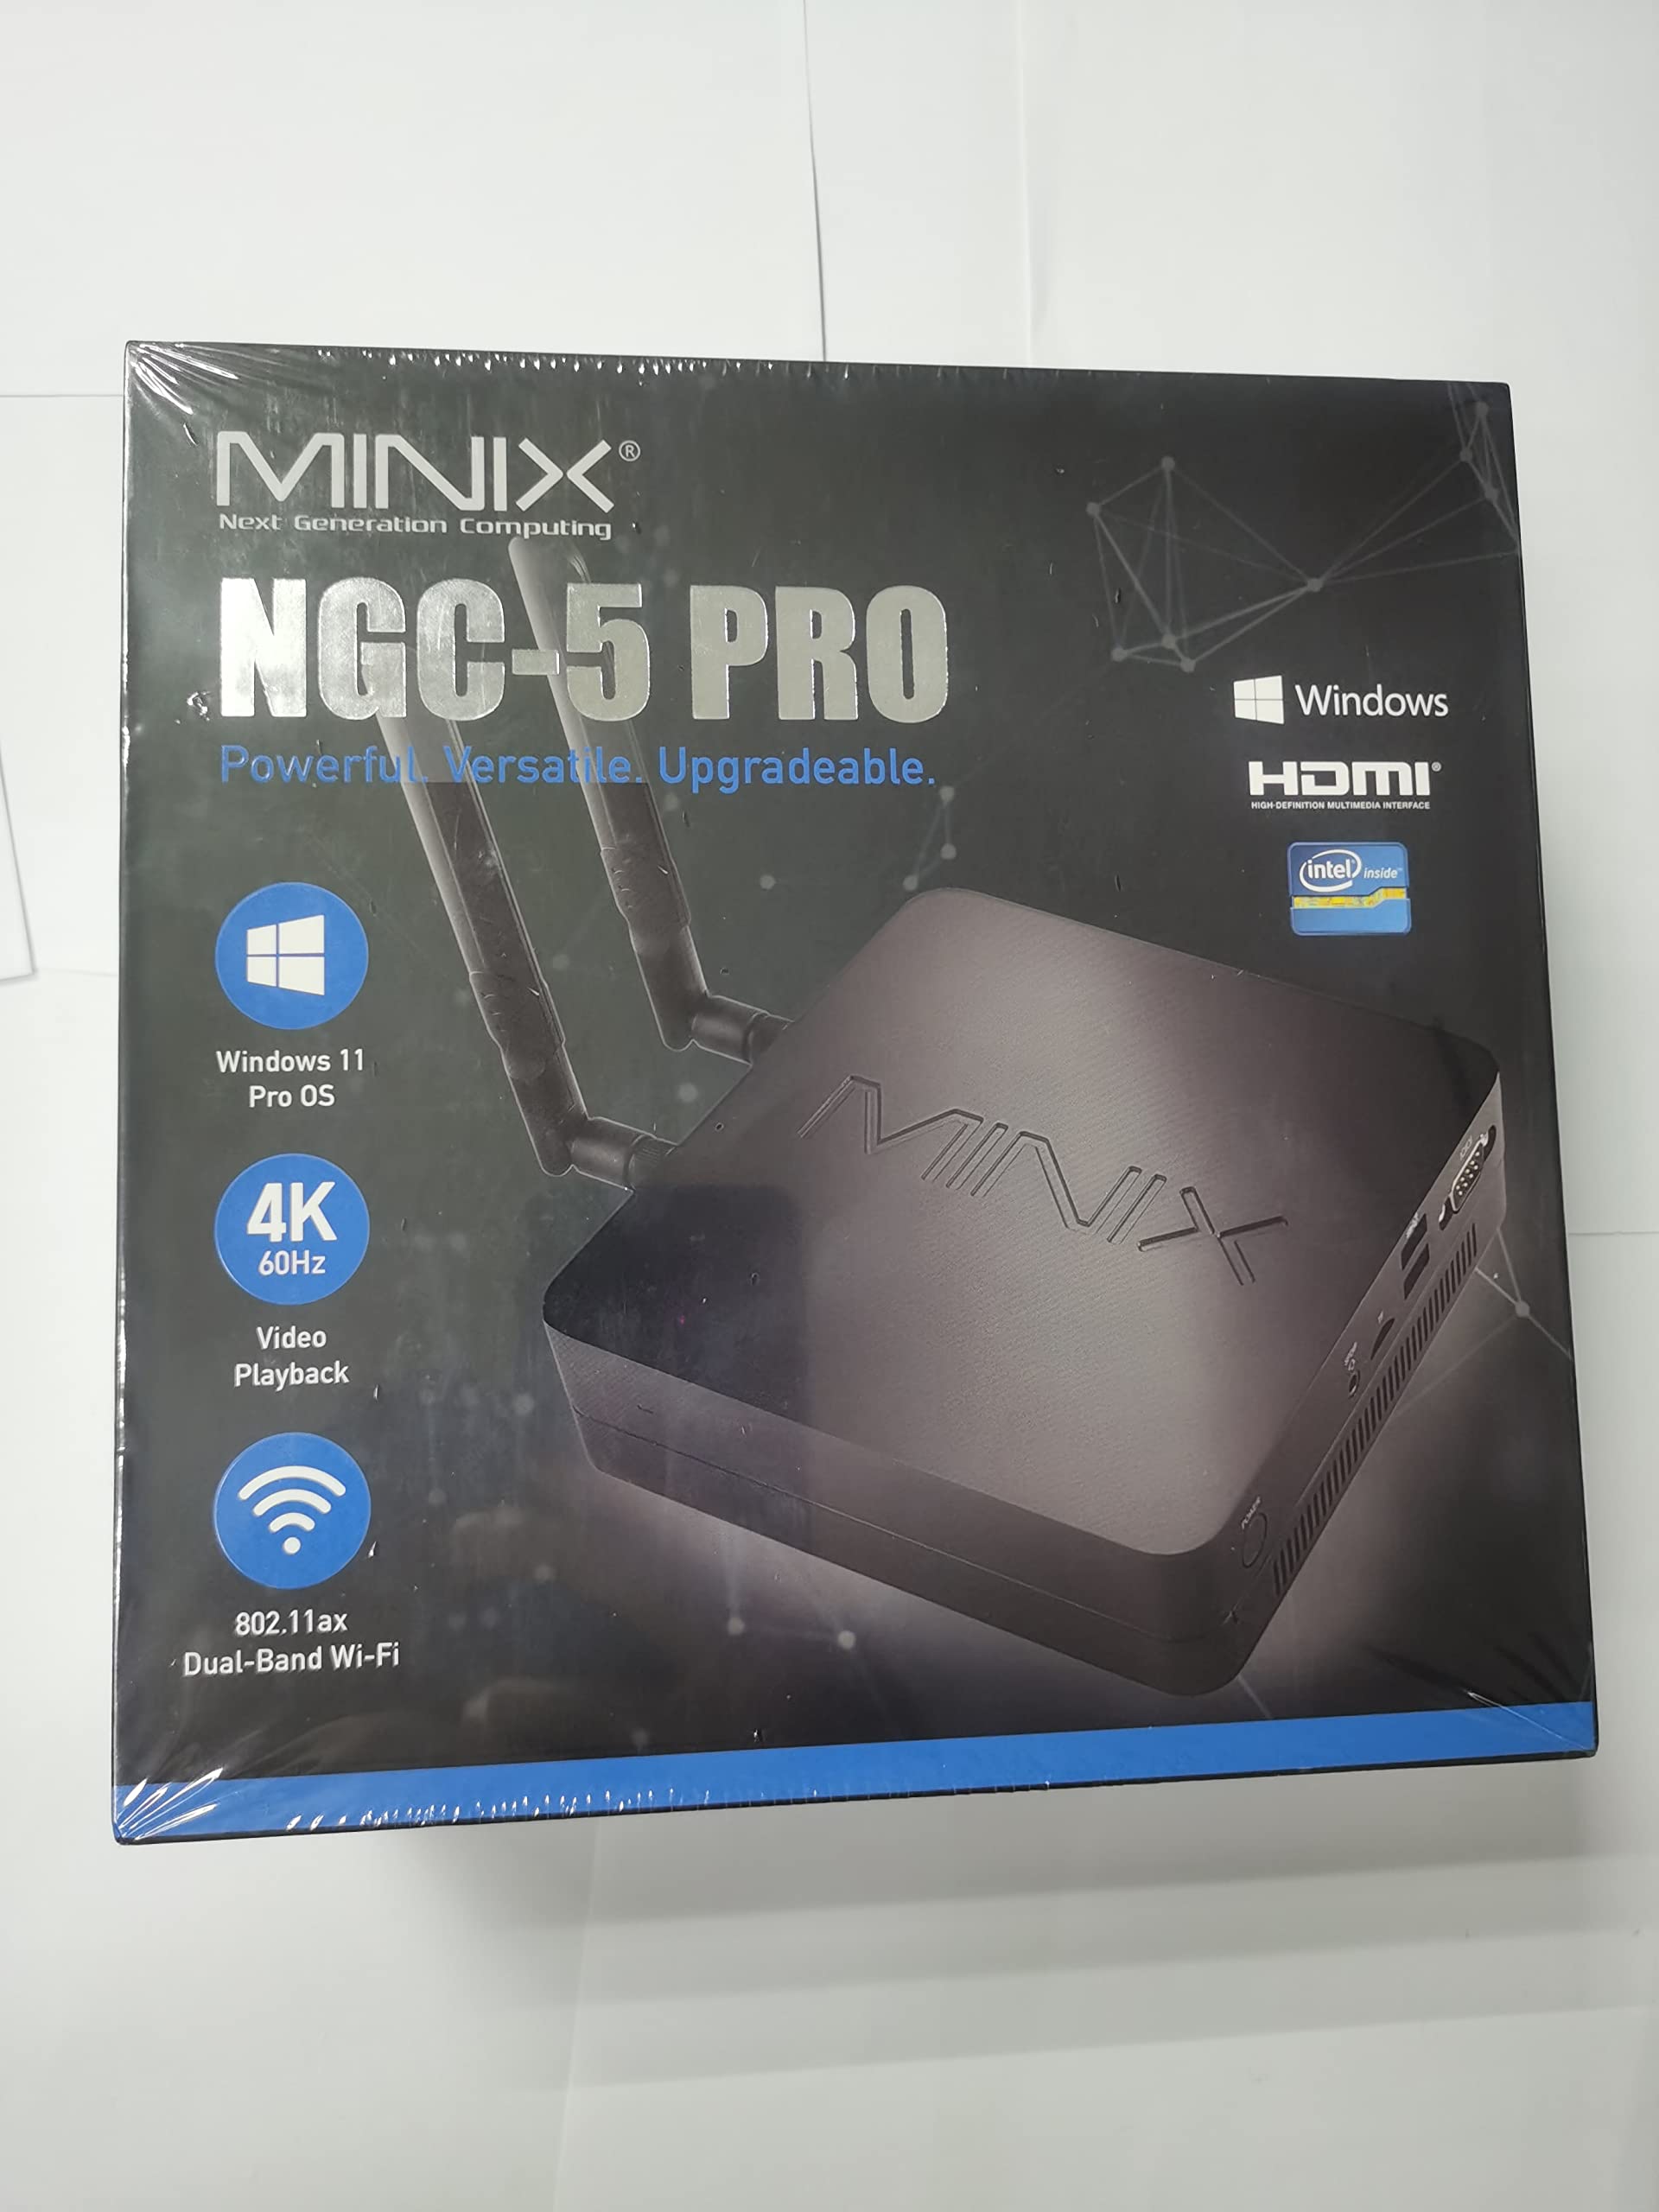 MINIX NGC-5 Pro, 8GB/256GB Mini Computer, Triple 4K @ 60Hz Display/HDMI 2.0/ USB-C/DP/Wi-Fi6/ Dual Gigabit Ethernet/4USB 3.1. Support 4G LTE, SSD (SATA), Auto Power On.(i5-10210U/Windows 11 Pro)